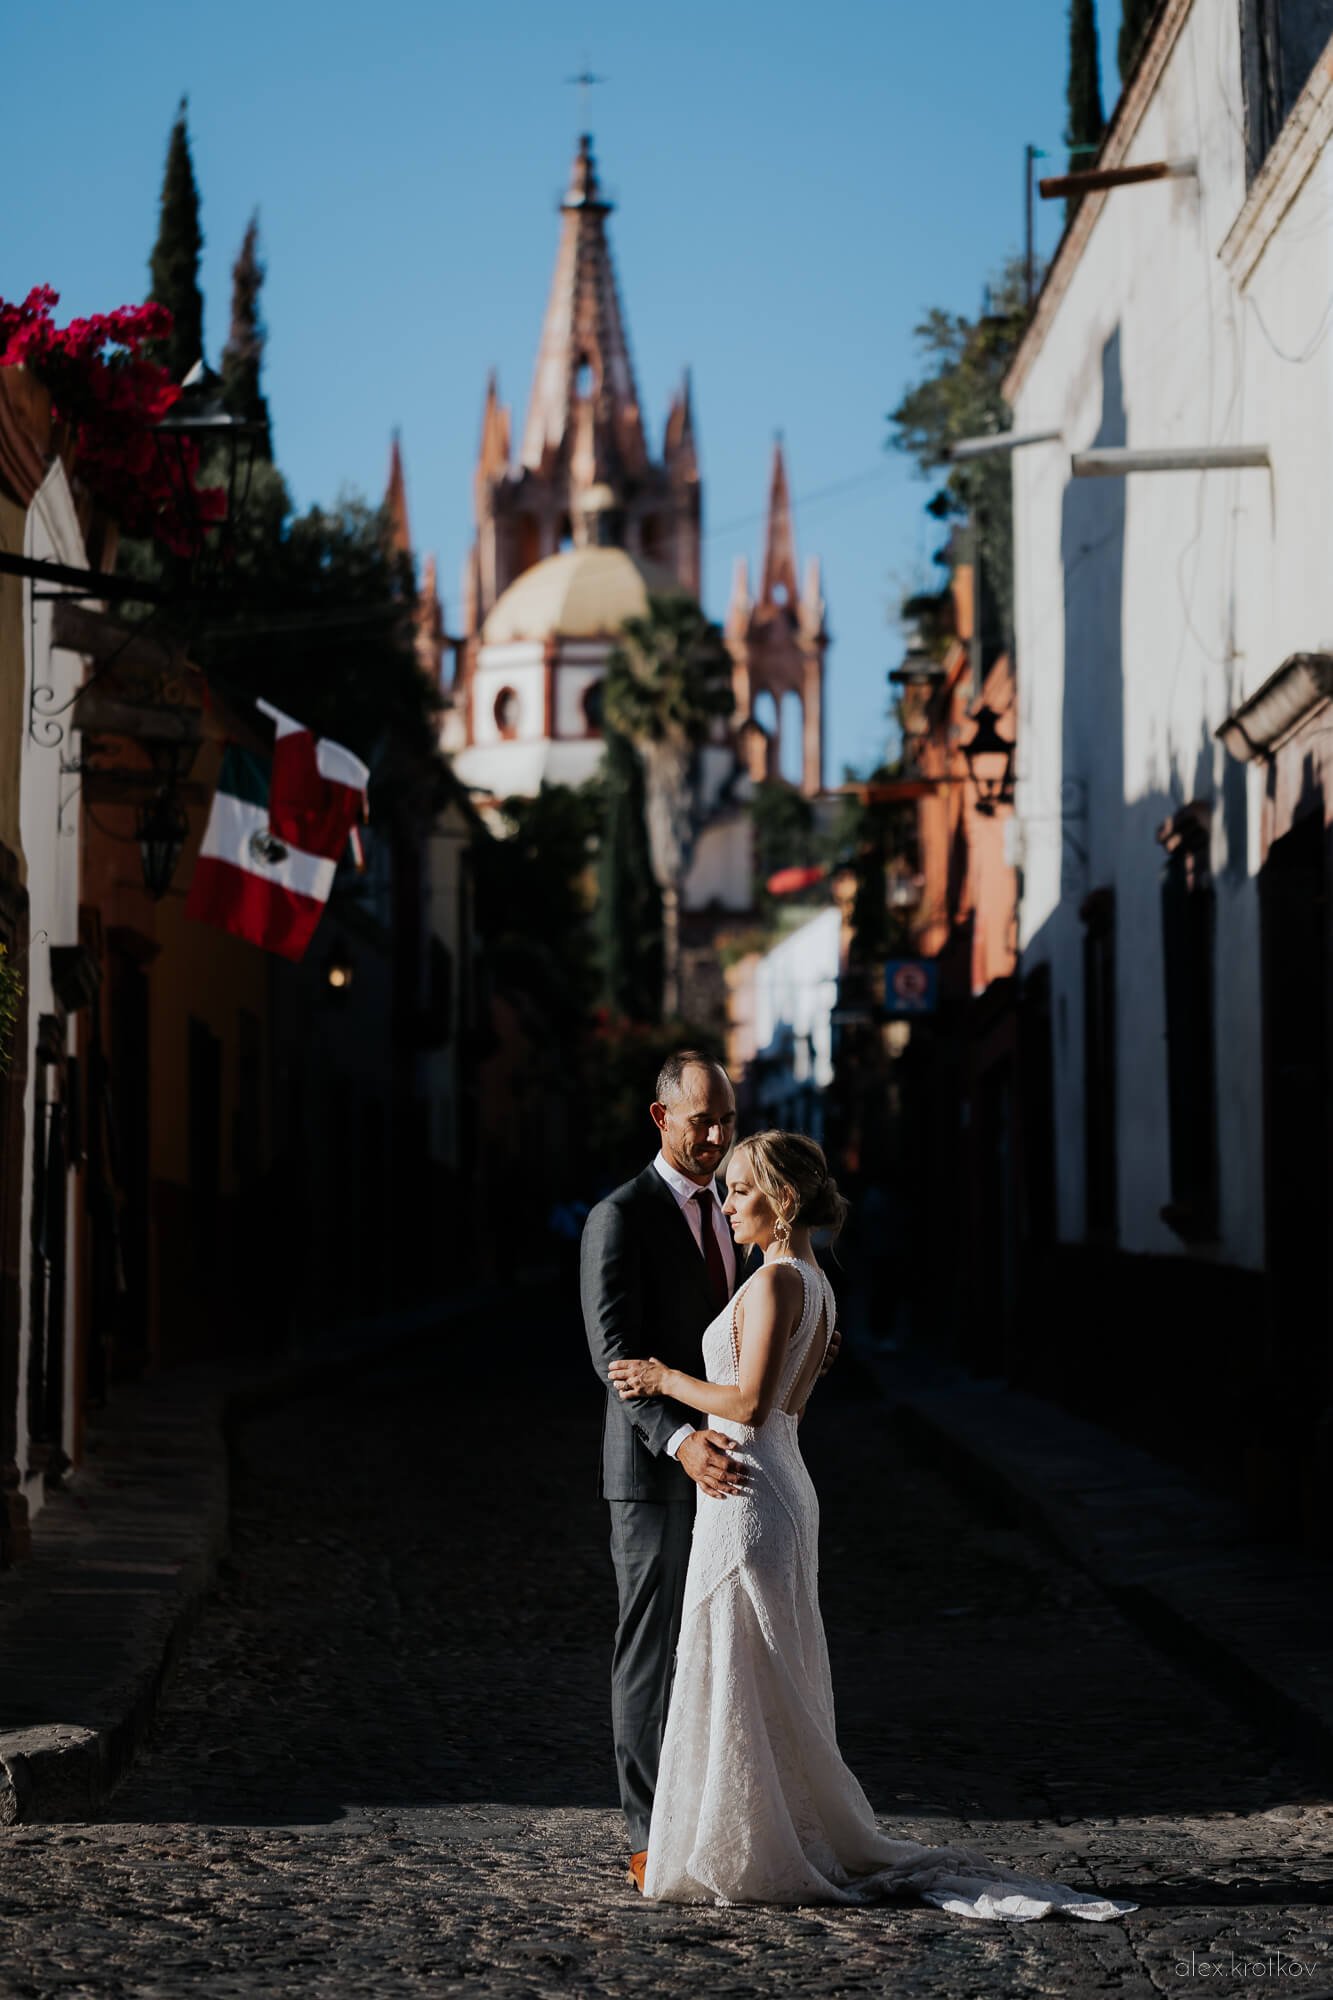 alex-krotkov-wedding-photographer-san-miguel-allende-guanajuato-mexico-best-0007-1X0A1208.jpg